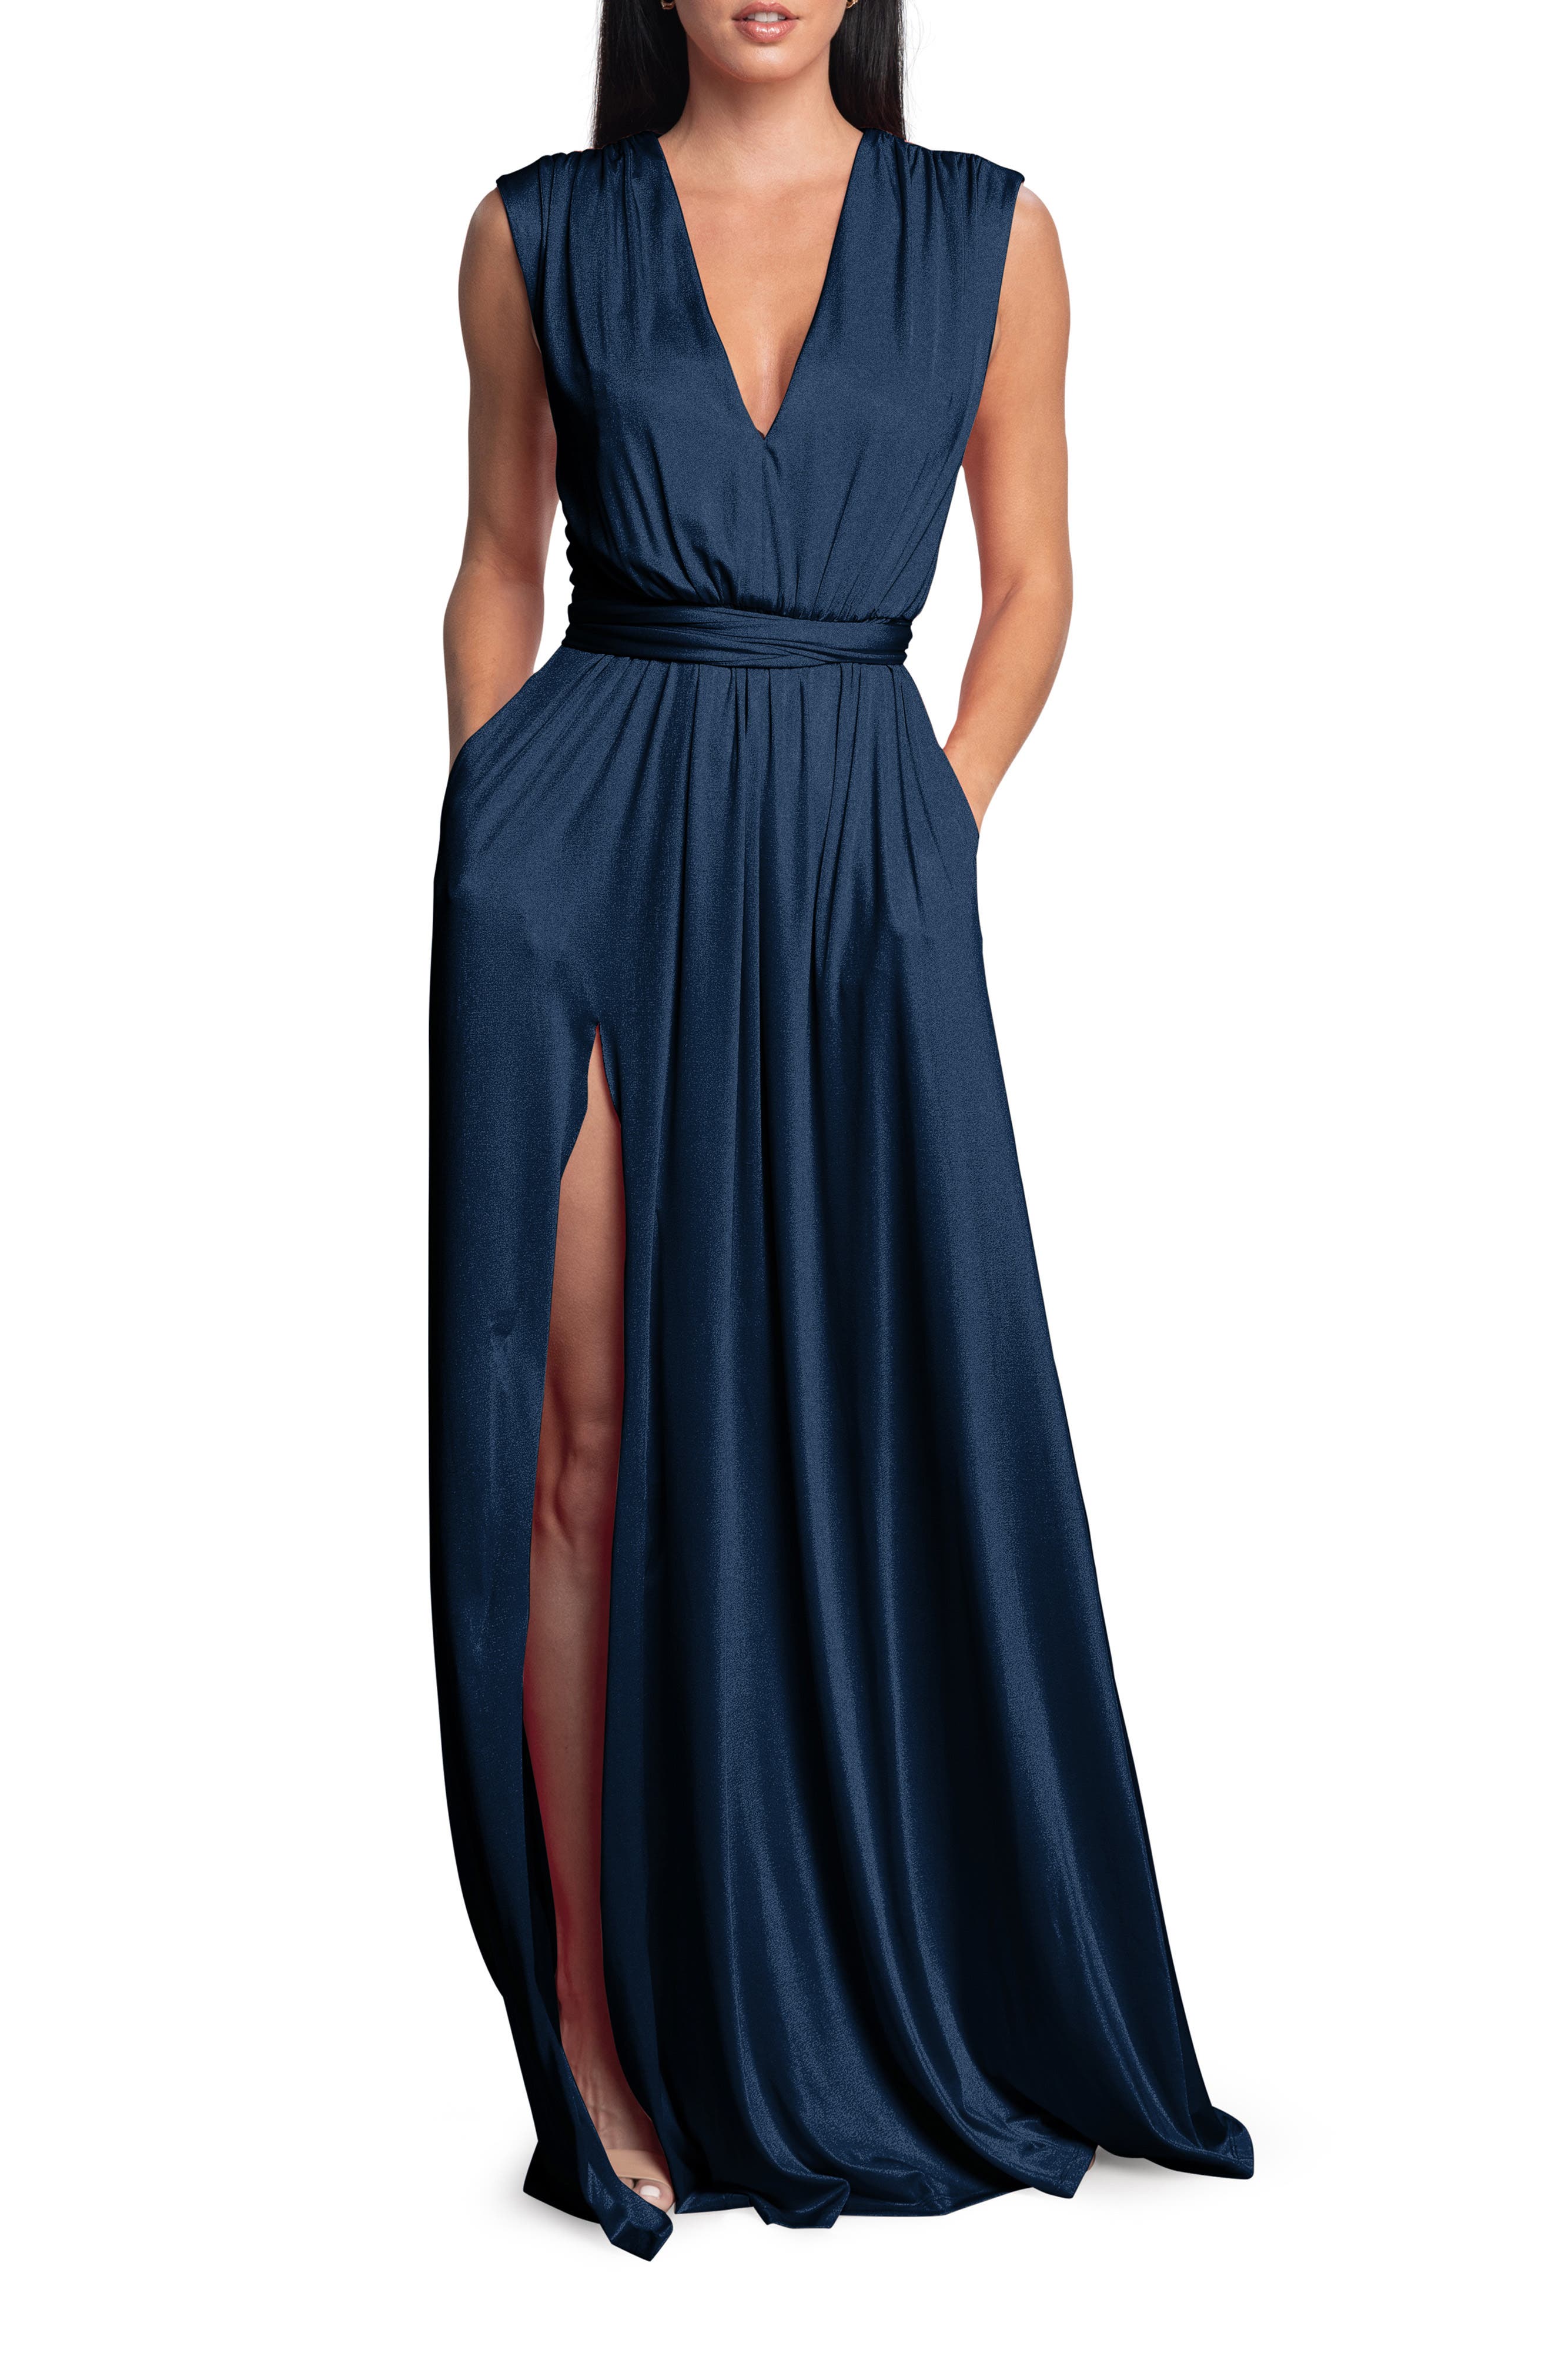 formal dresses for women navy blue ...